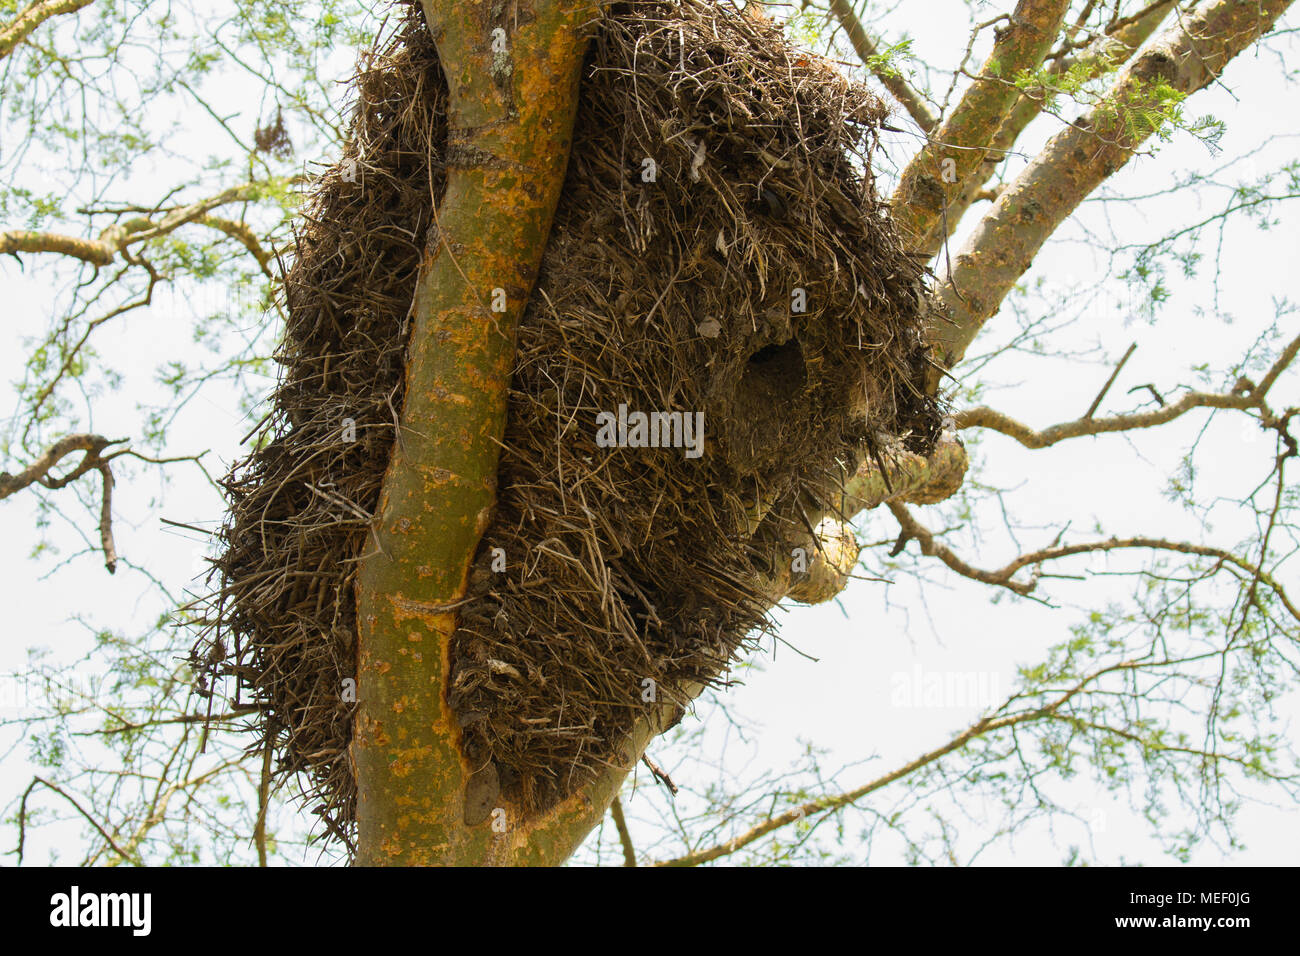 Hammercop- social nest on Acacia tree, Uganda Stock Photo